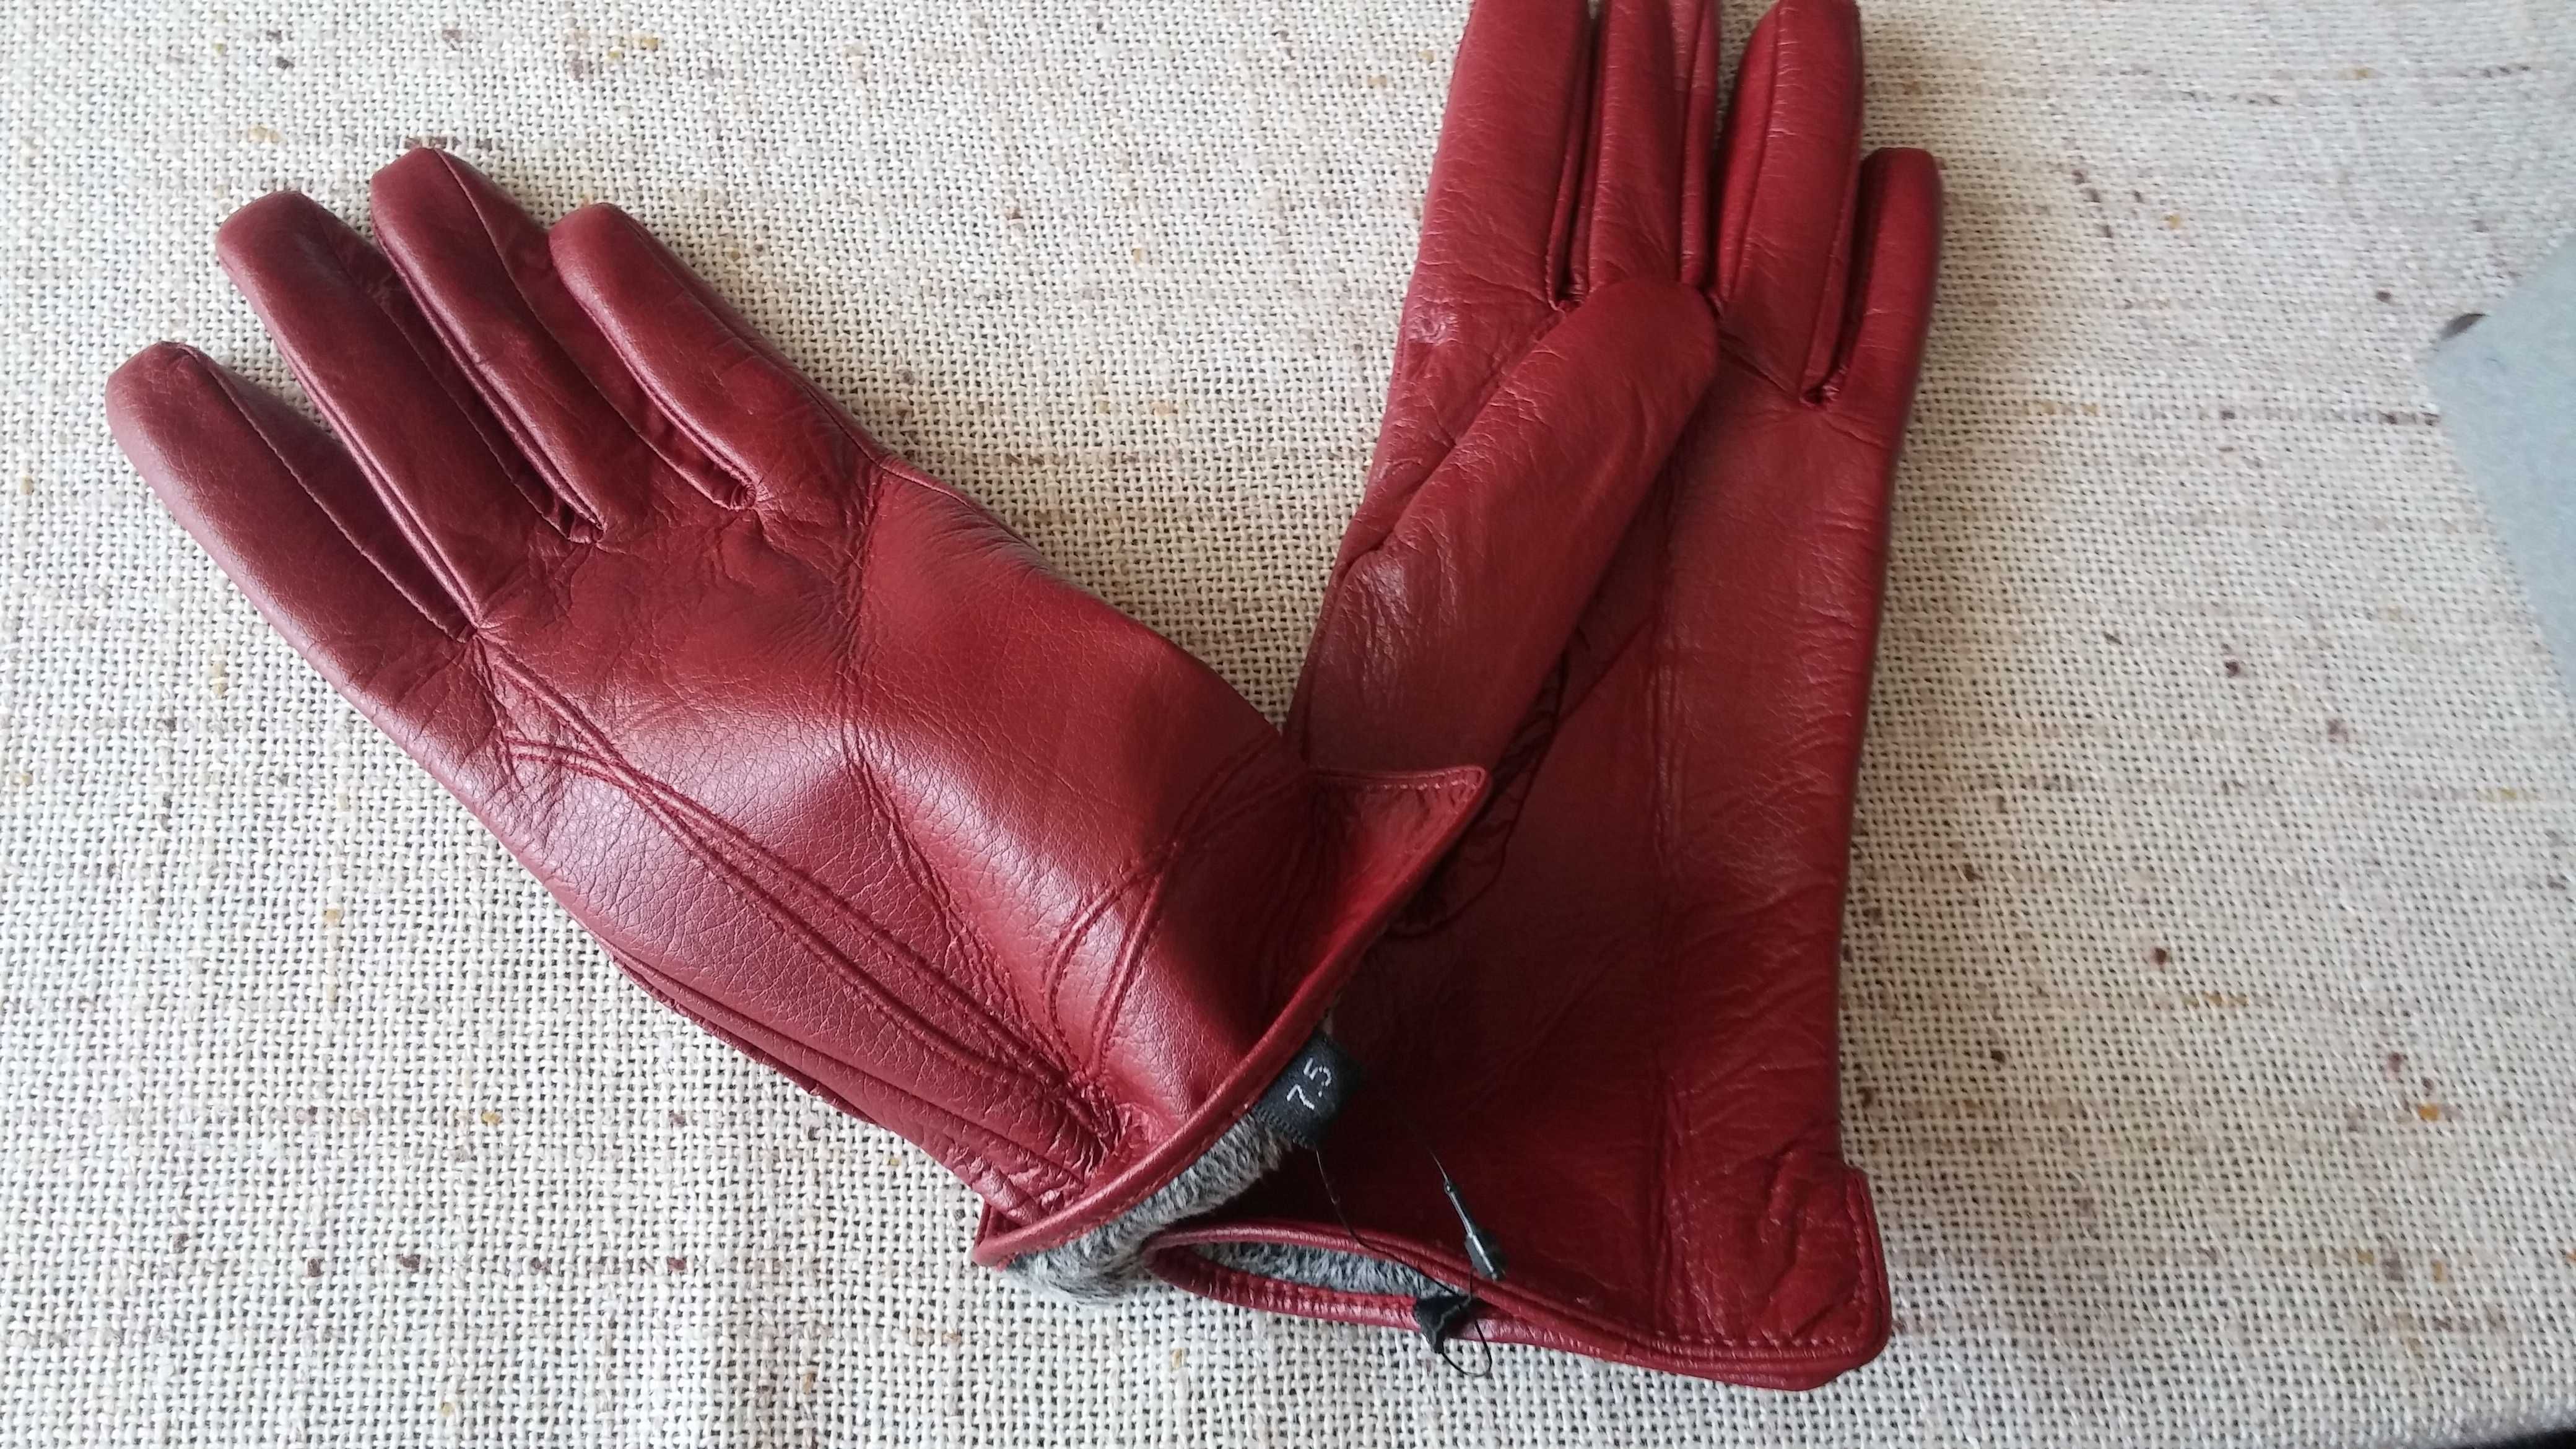 Śliczne , skórzane nowe rękawiczki - rozmiar 7,5  !!